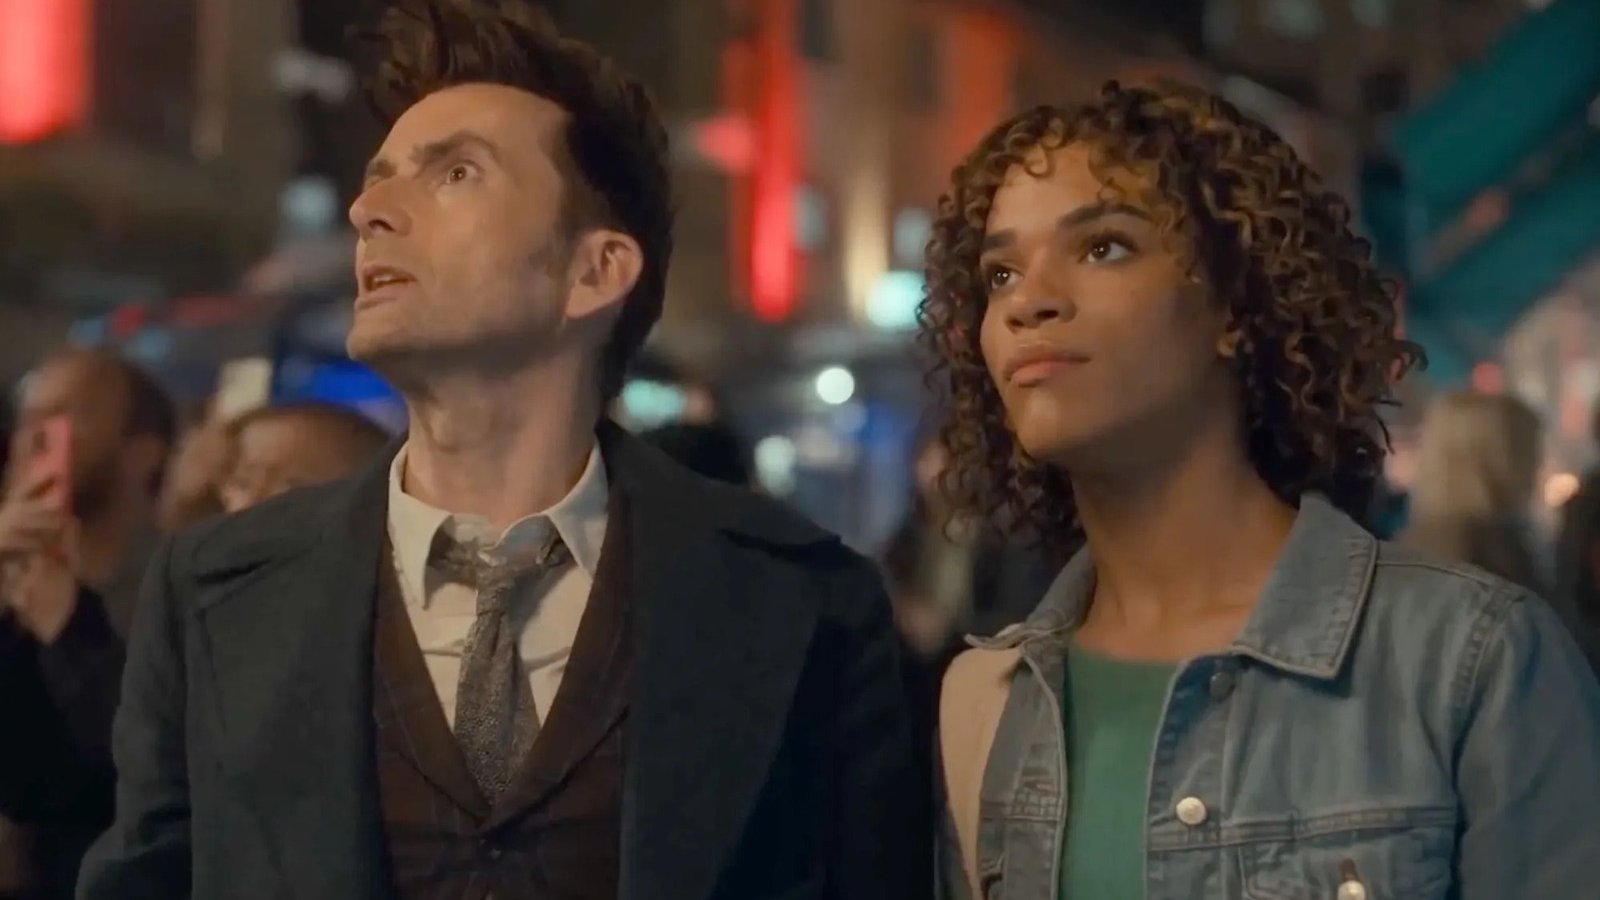 Doctor Who, BBC risponde alle critiche sul personaggio transgender: 'Continueremo a celebrare la diversità'